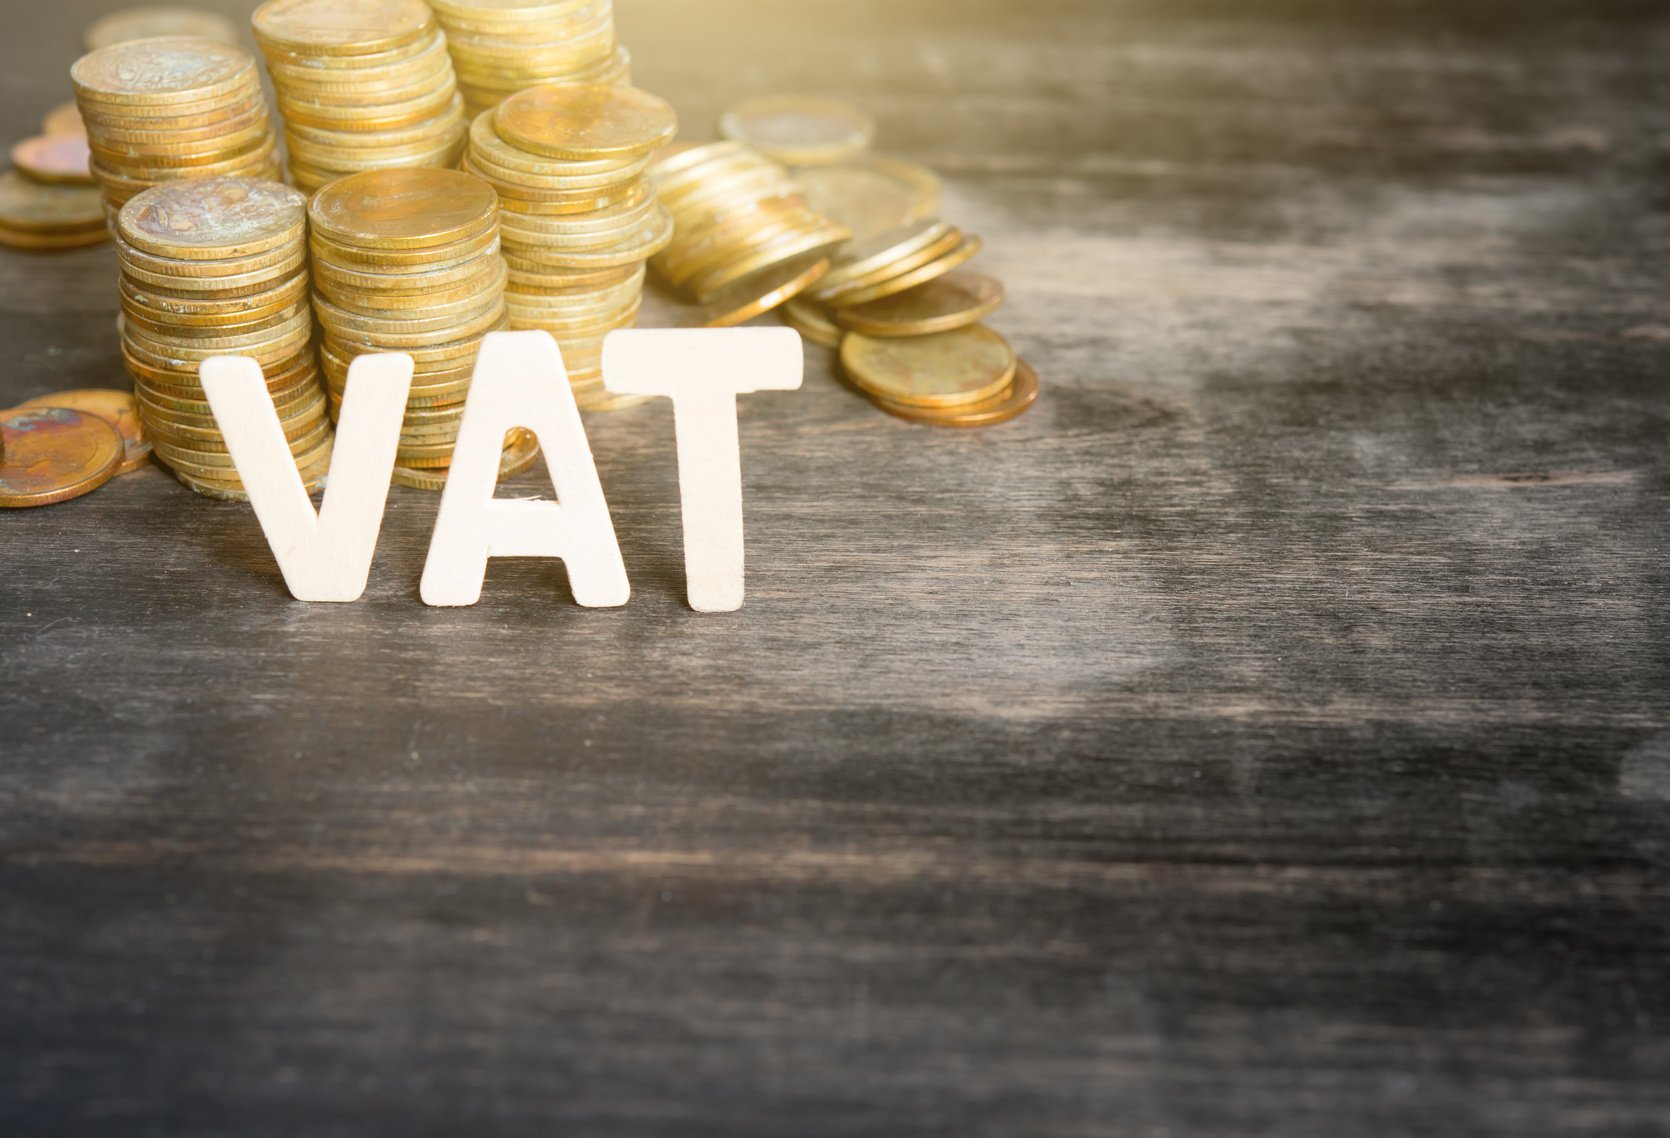 Υπουργείο Οικονομικών: Δήλωση του Υπουργού Οικονομικών κ. Χρήστου Σταϊκούρα σχετικά με την έκθεση της Ευρωπαϊκής Επιτροπής για το έλλειμμα ΦΠΑ (VAΤ gap)